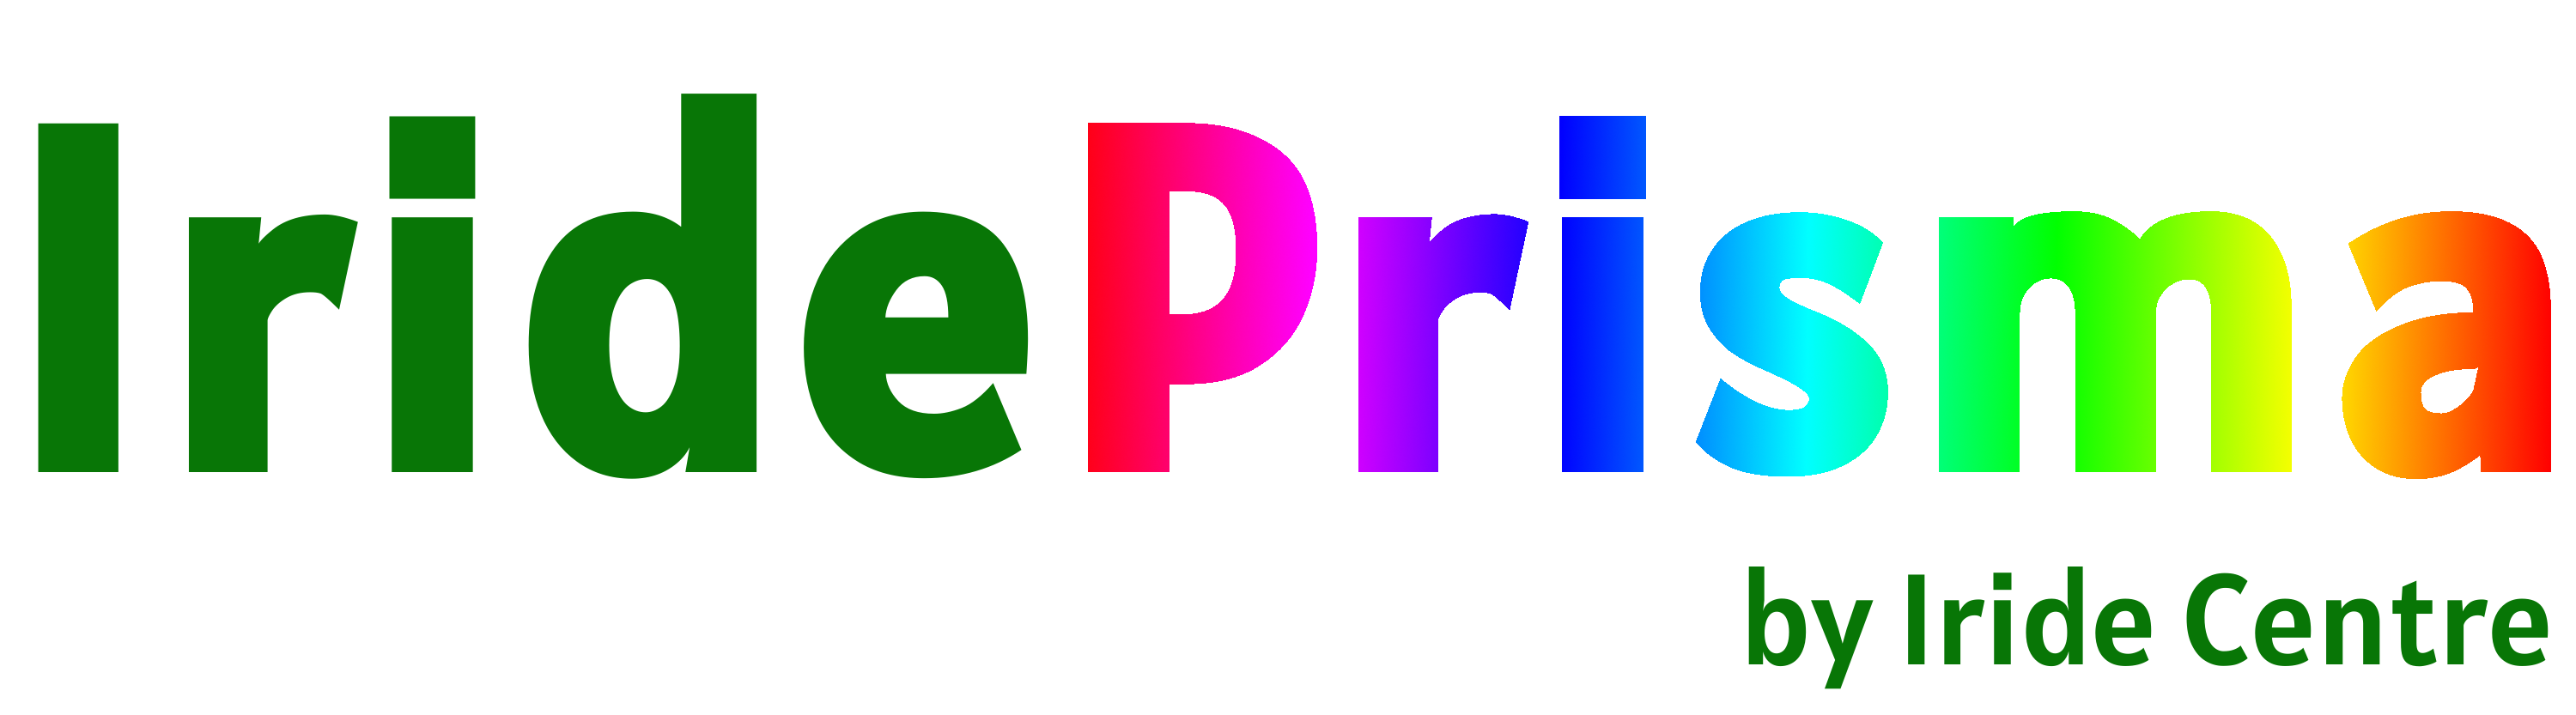 Logo Prisma kein Hintergrund